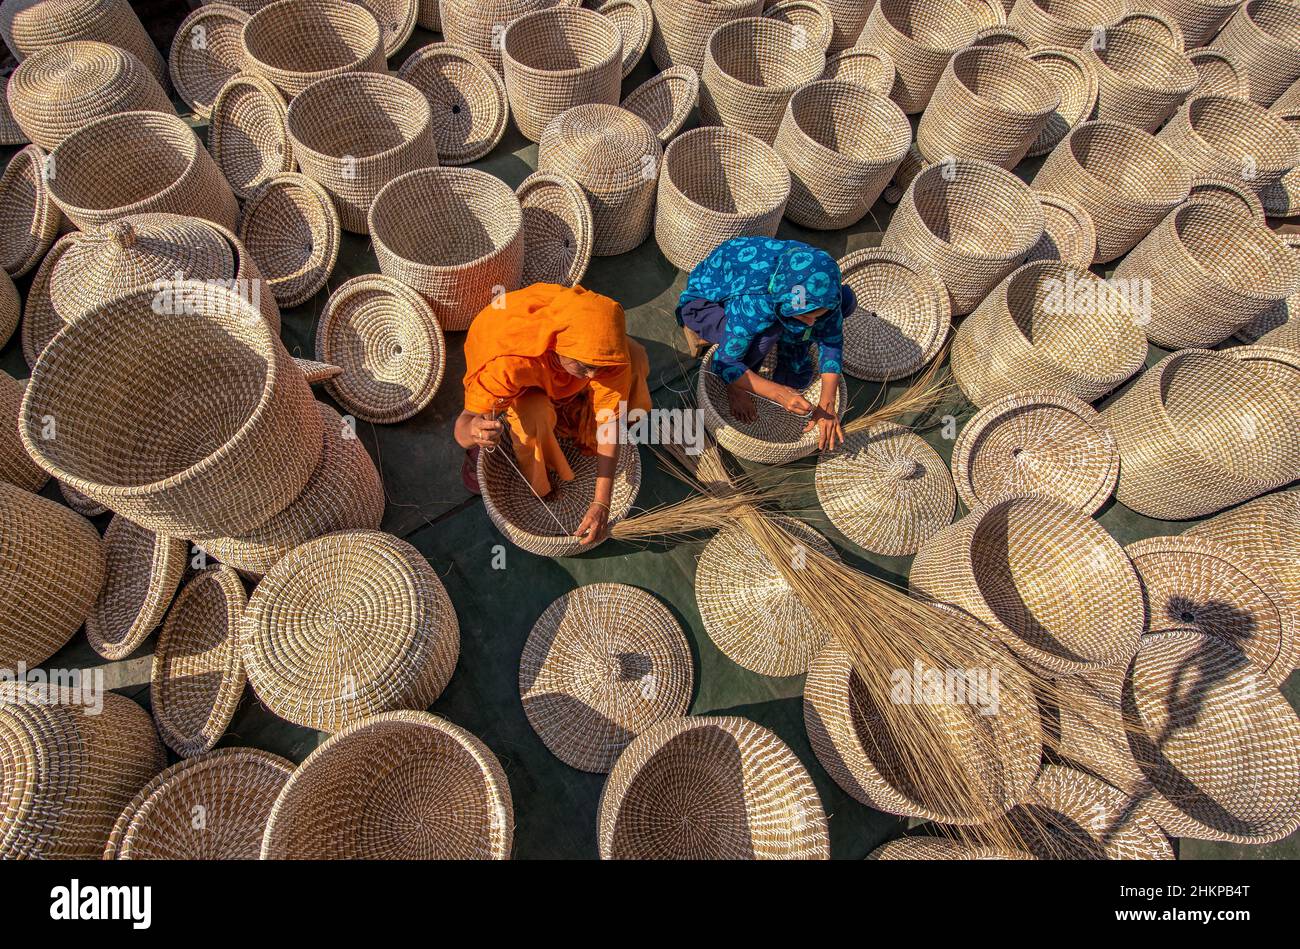 Tausende von frisch handgewebten Körben trocknen in der Sonne, bevor sie in die ganze Welt exportiert werden. Stockfoto